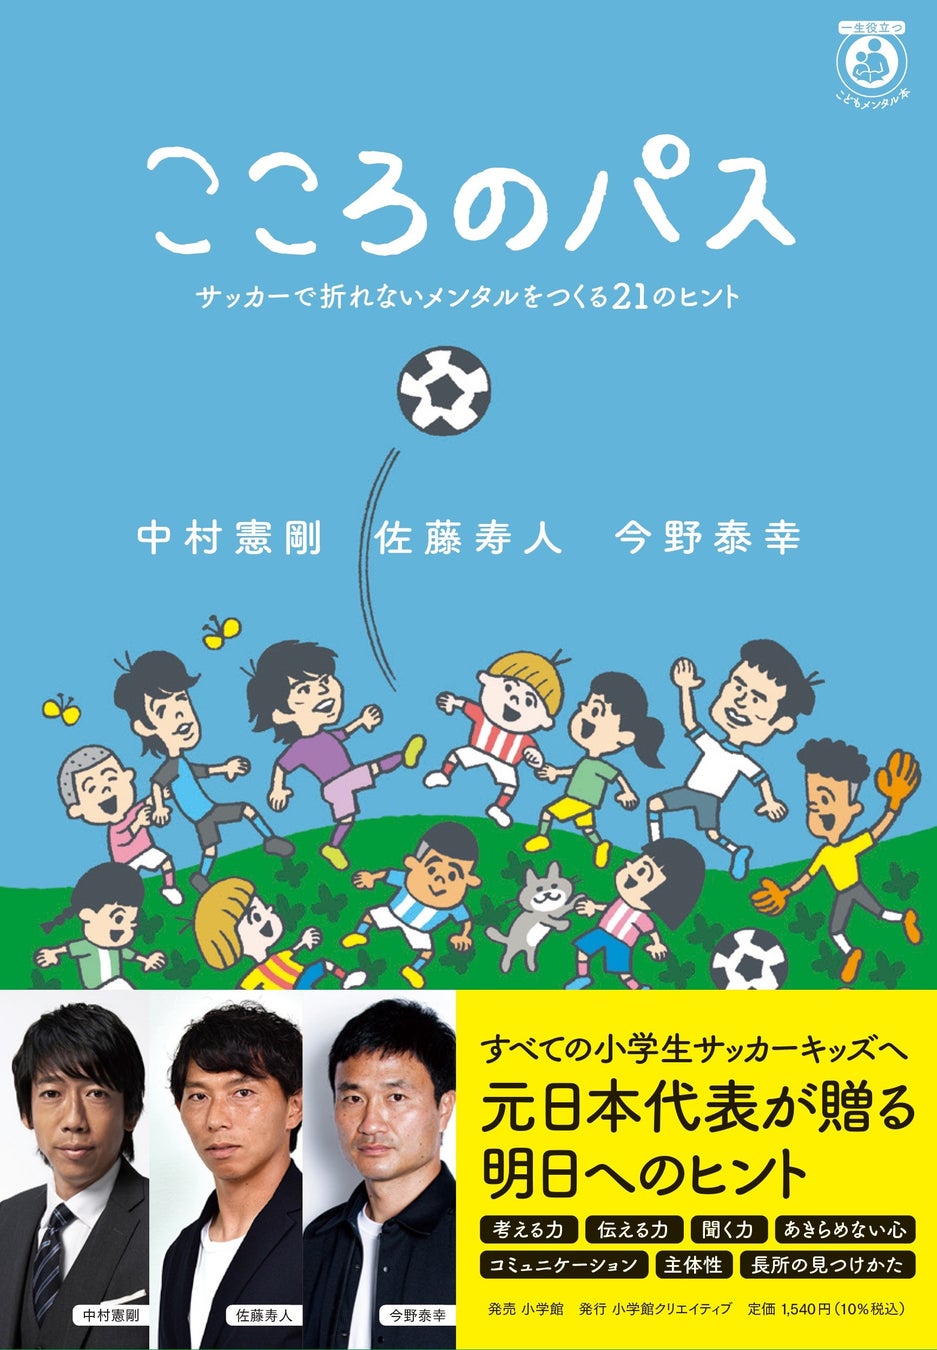 9月18日(日)に国立競技場で行われる「FC東京vs. 京都サンガF.C.」に関するスペシャルコンテンツを配信！